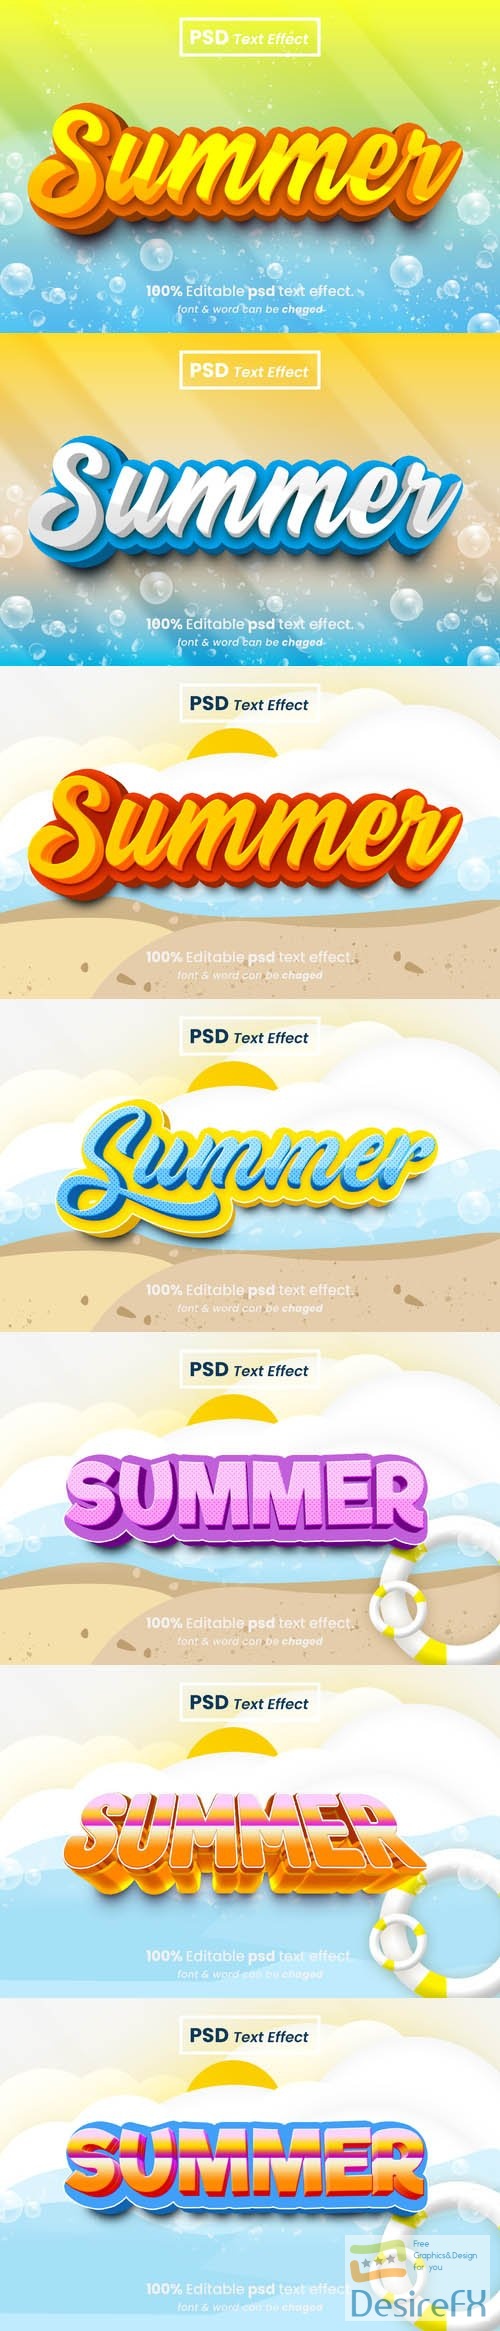 PSD summer 3d editable text effect